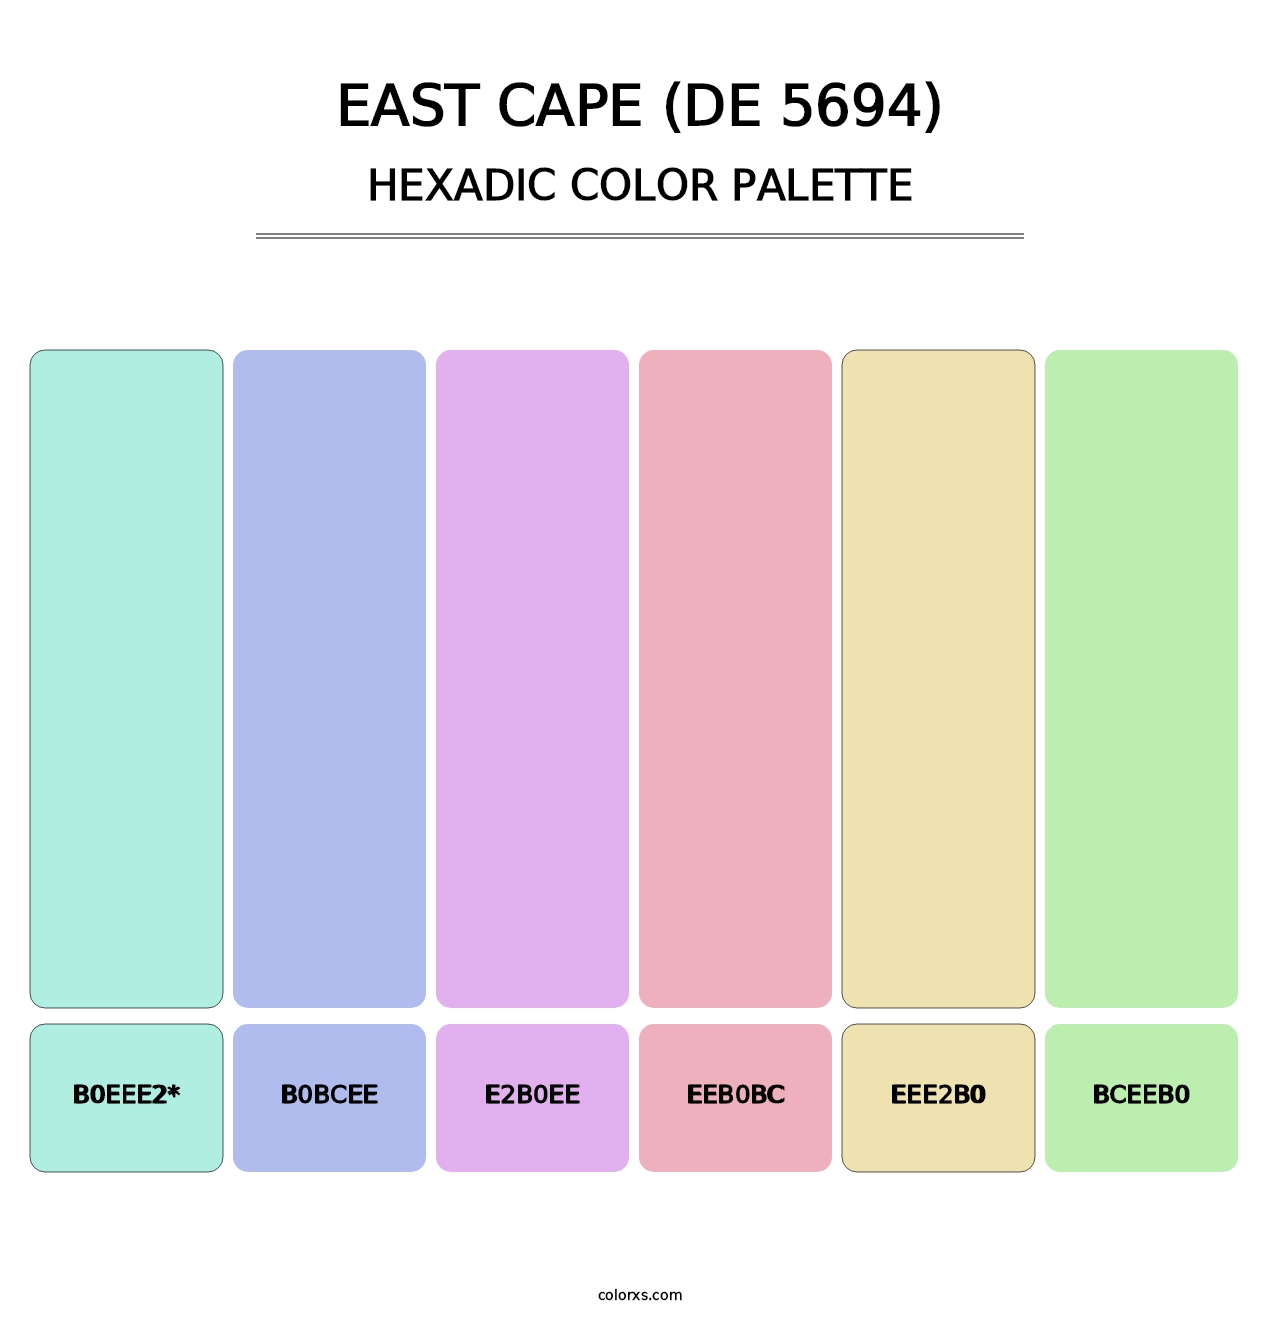 East Cape (DE 5694) - Hexadic Color Palette